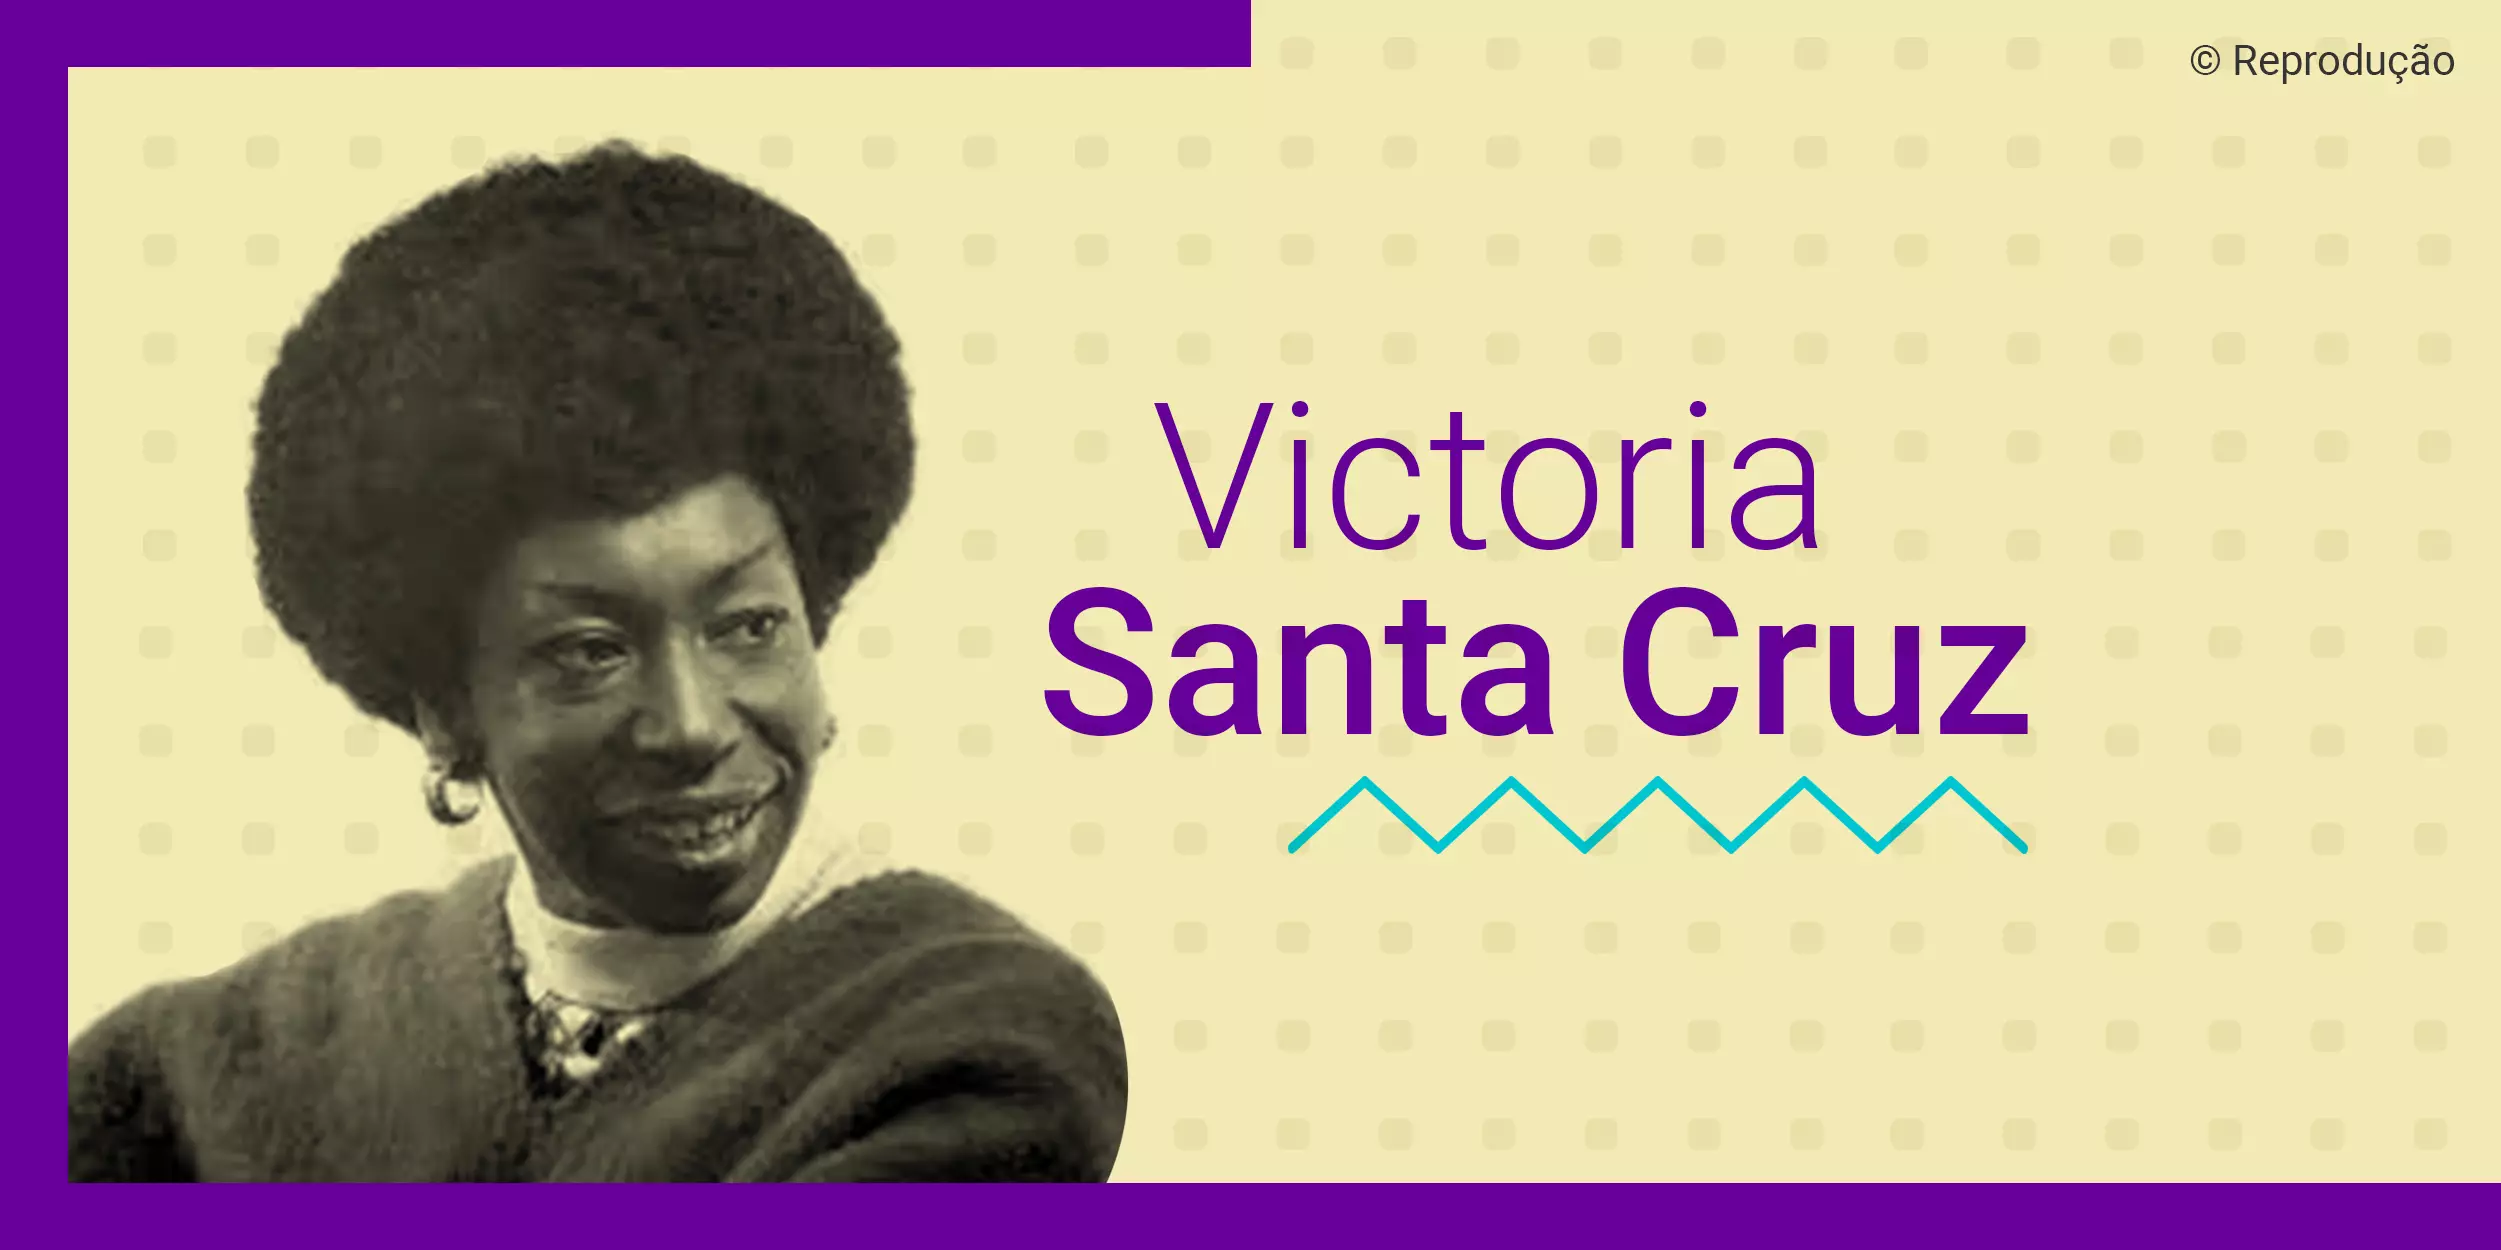 Ilustração com a foto em branco e preto de Victoria Santa Cruz, uma das líderes negras da América Latina